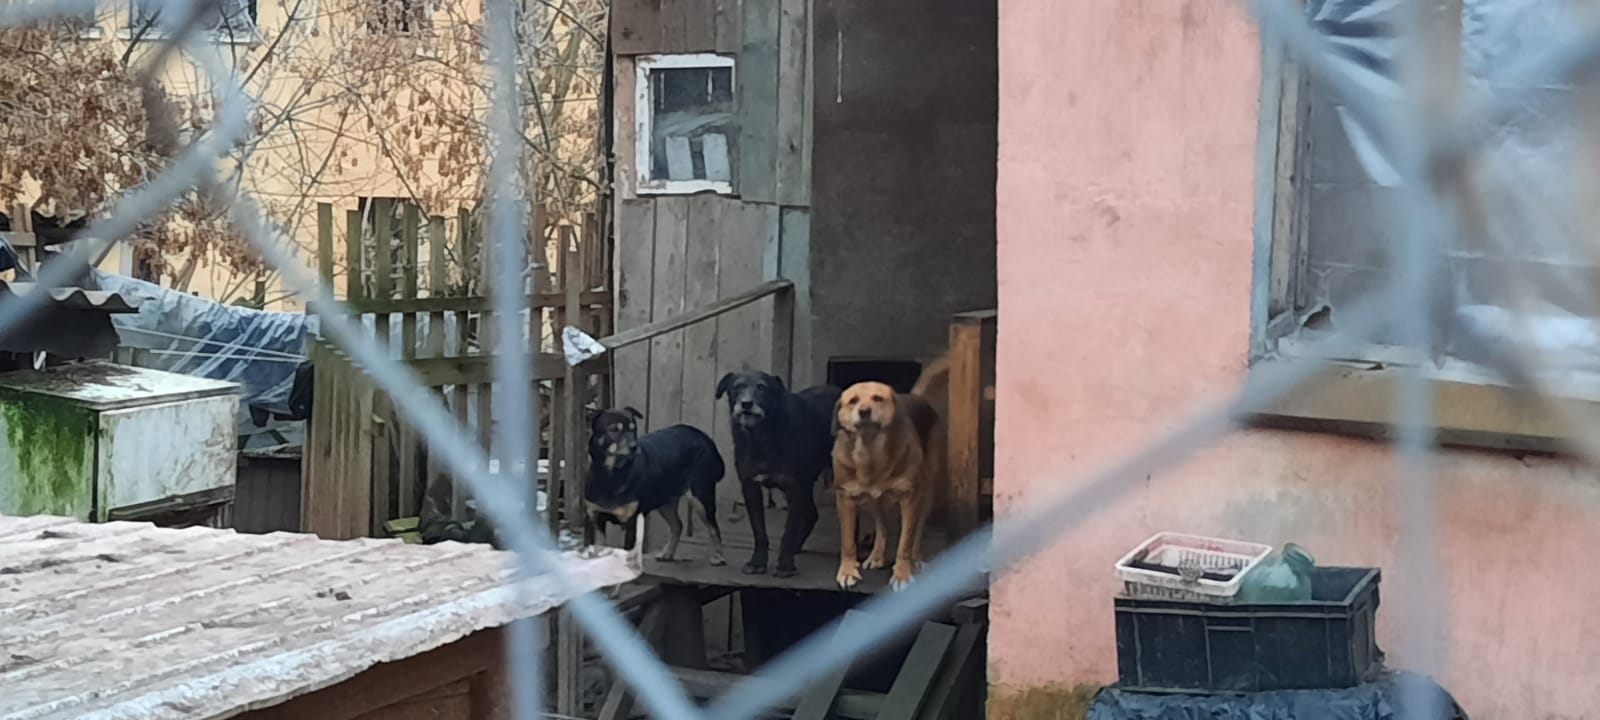 В Смоленске в домашнем приюте для собак обрушилась крыша. Женщина успела спастись